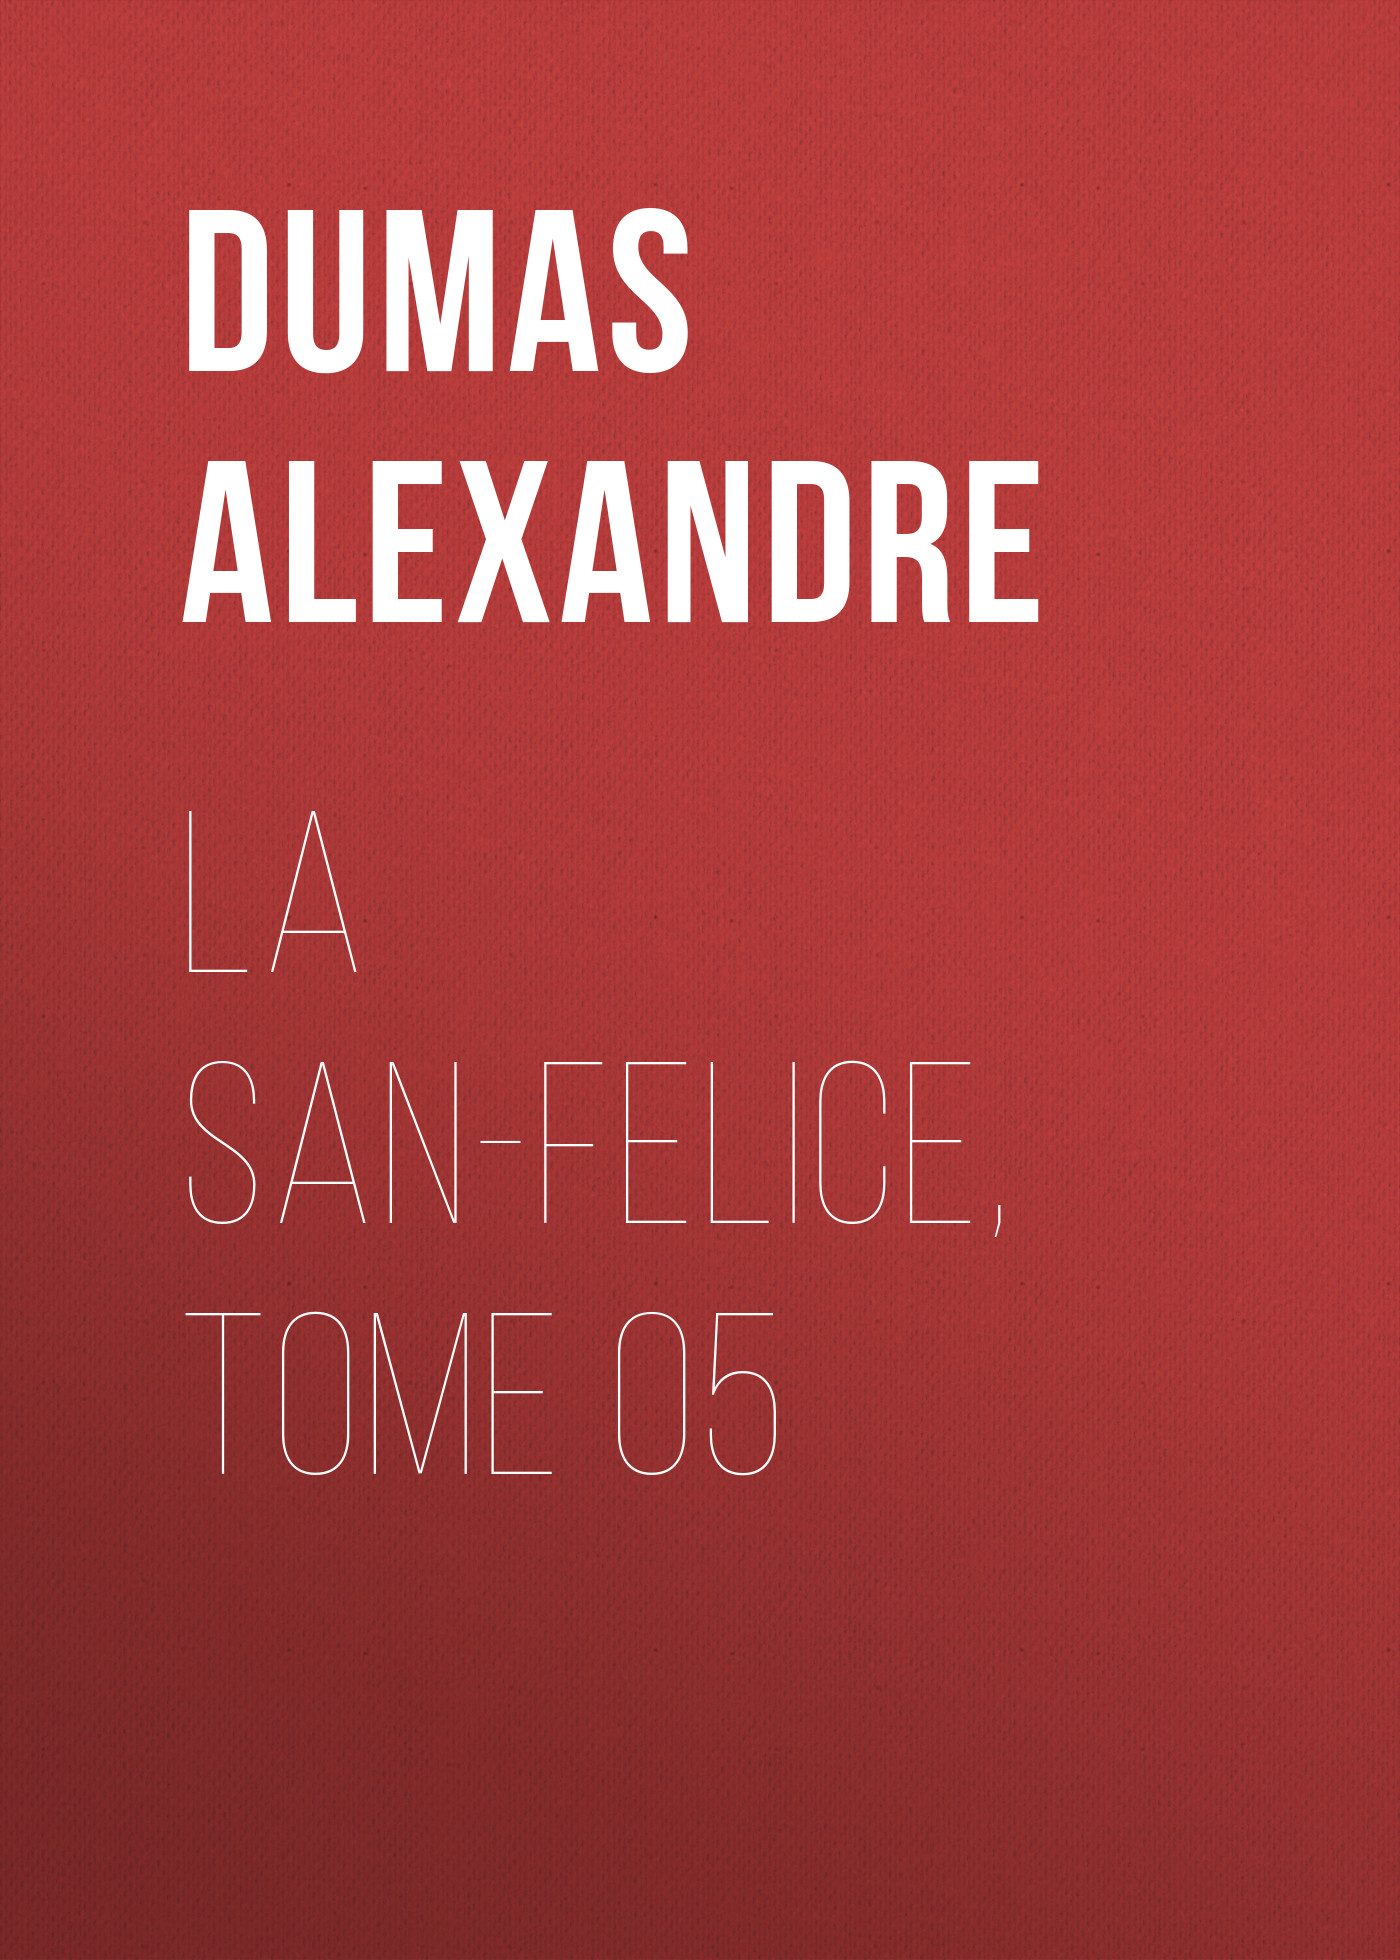 Книга La San-Felice, Tome 05 из серии , созданная Alexandre Dumas, может относится к жанру Литература 19 века, Зарубежная старинная литература, Зарубежная классика. Стоимость электронной книги La San-Felice, Tome 05 с идентификатором 25203463 составляет 0 руб.